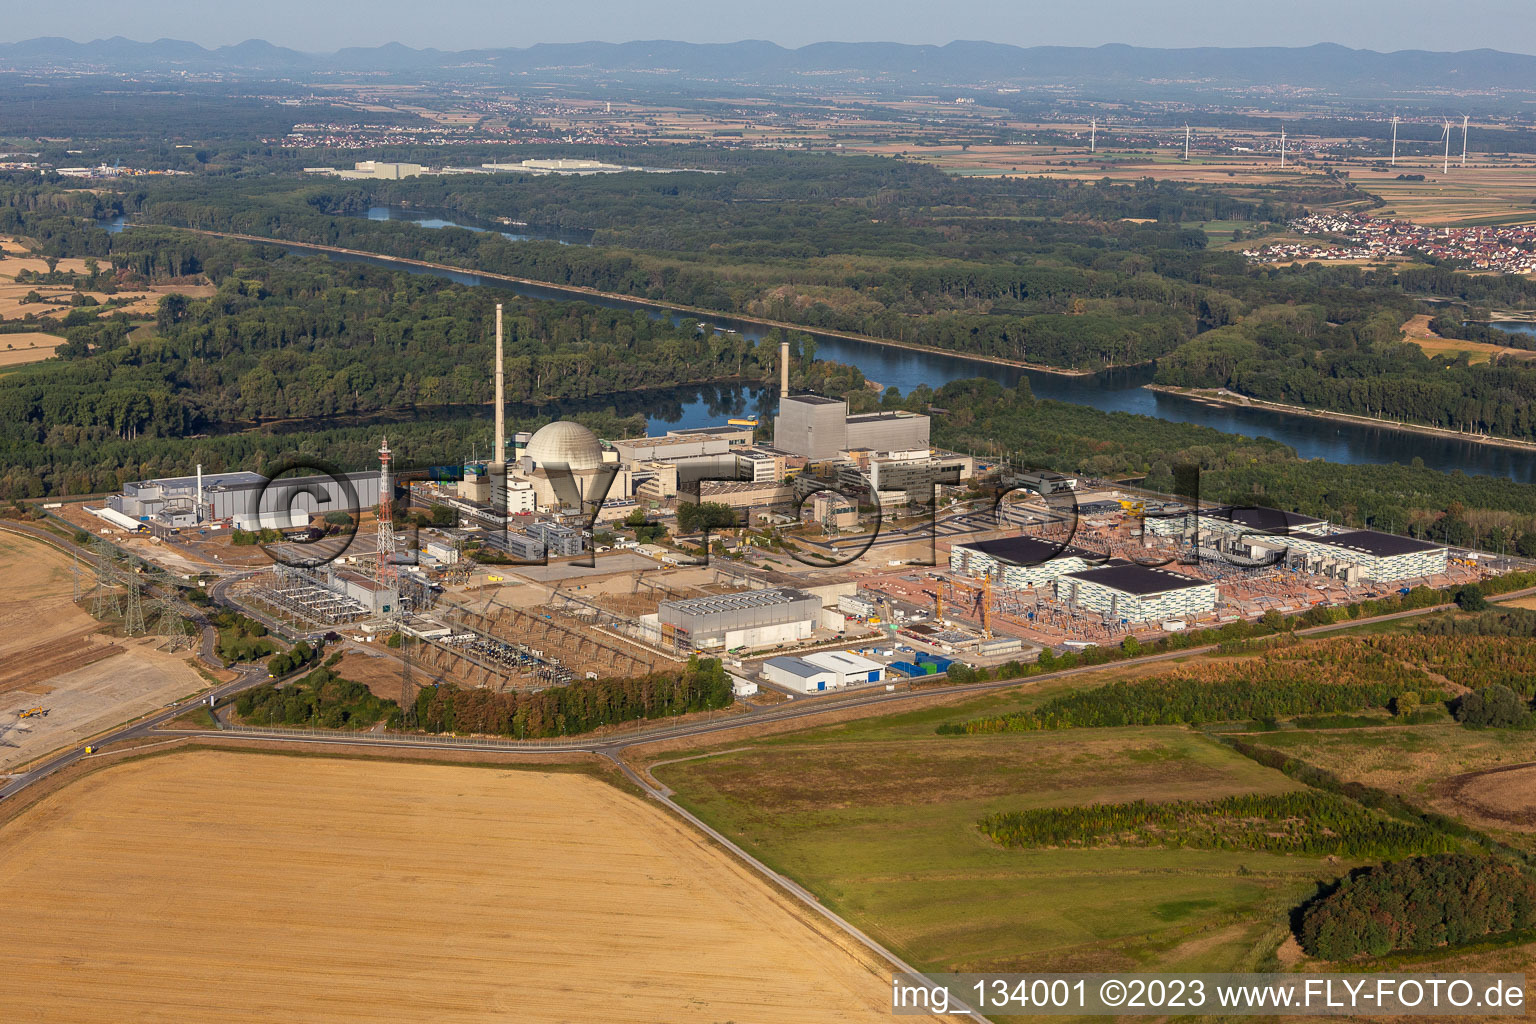 TransnetBW GmbH, sous-station à courant continu sur le site de la centrale nucléaire déclassée Philippsburg à Philippsburg dans le département Bade-Wurtemberg, Allemagne depuis l'avion